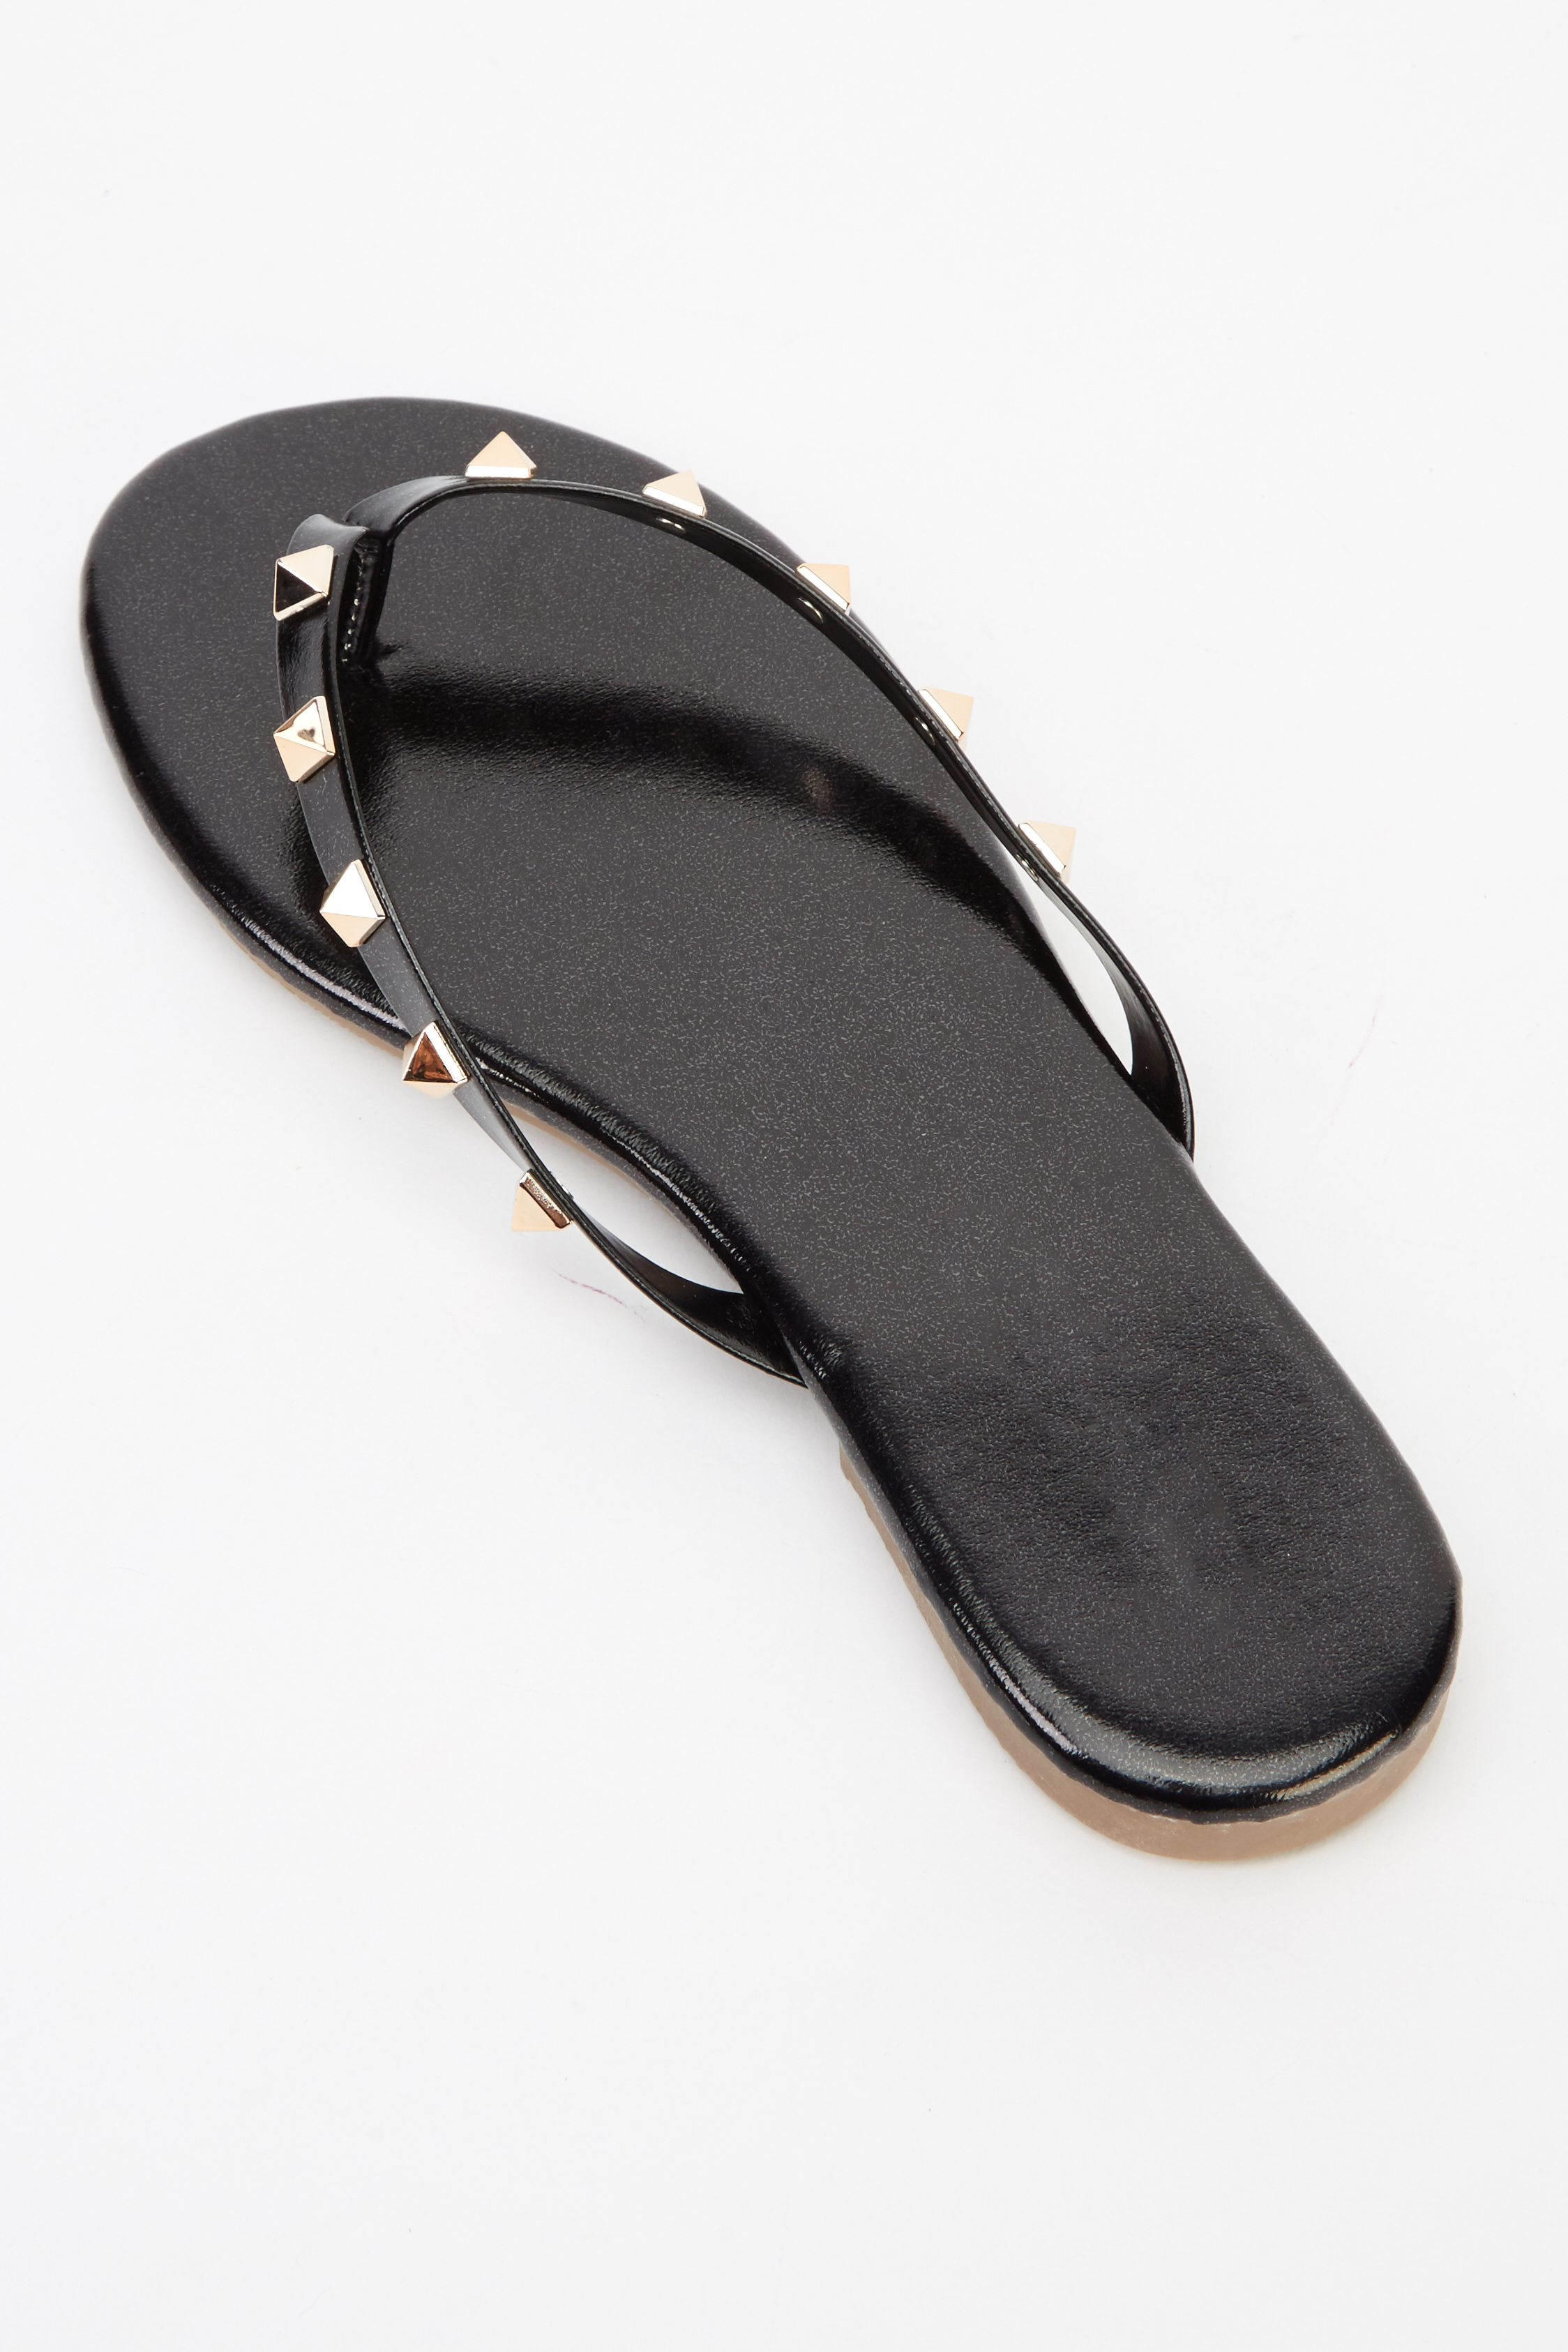 Studded Black Flip Flops - Just $3